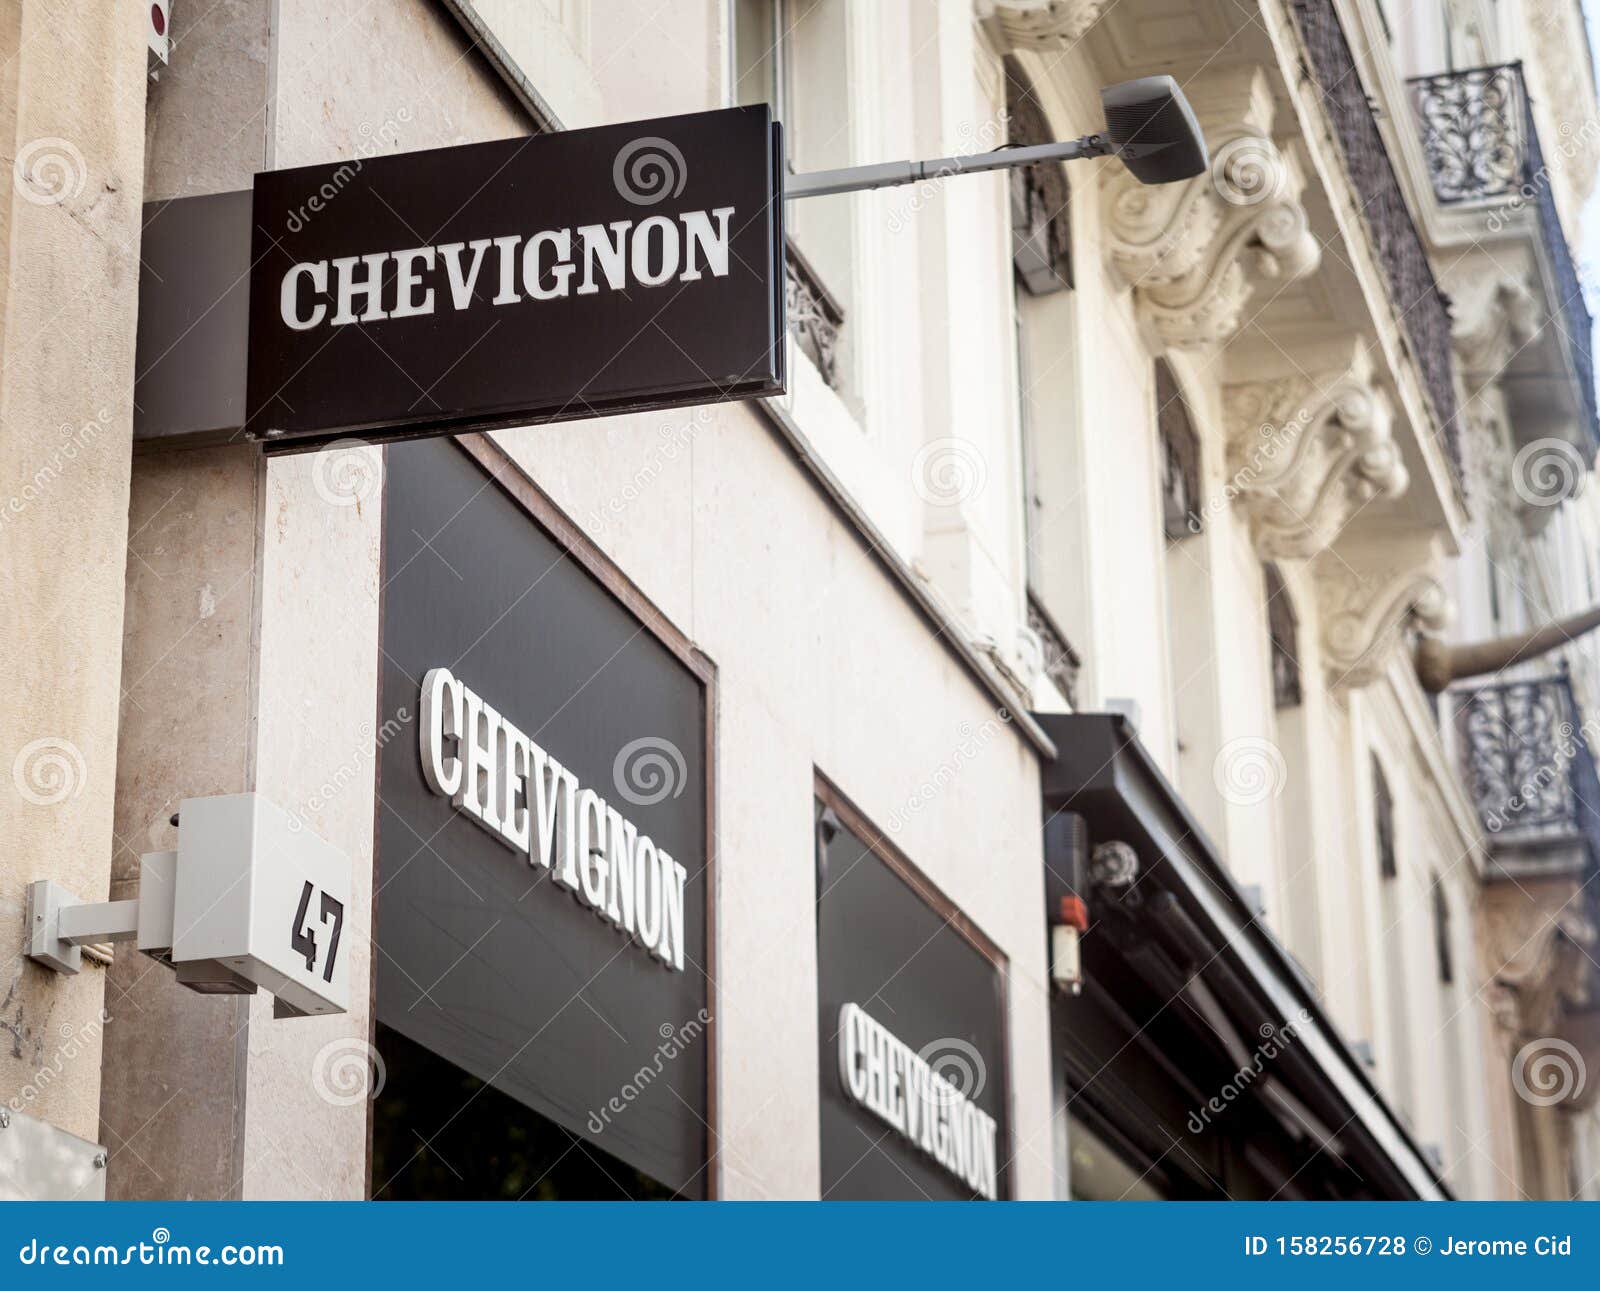 Chevignon Logo in Front of Their Shop for Lyon. Chevignon is a French ...